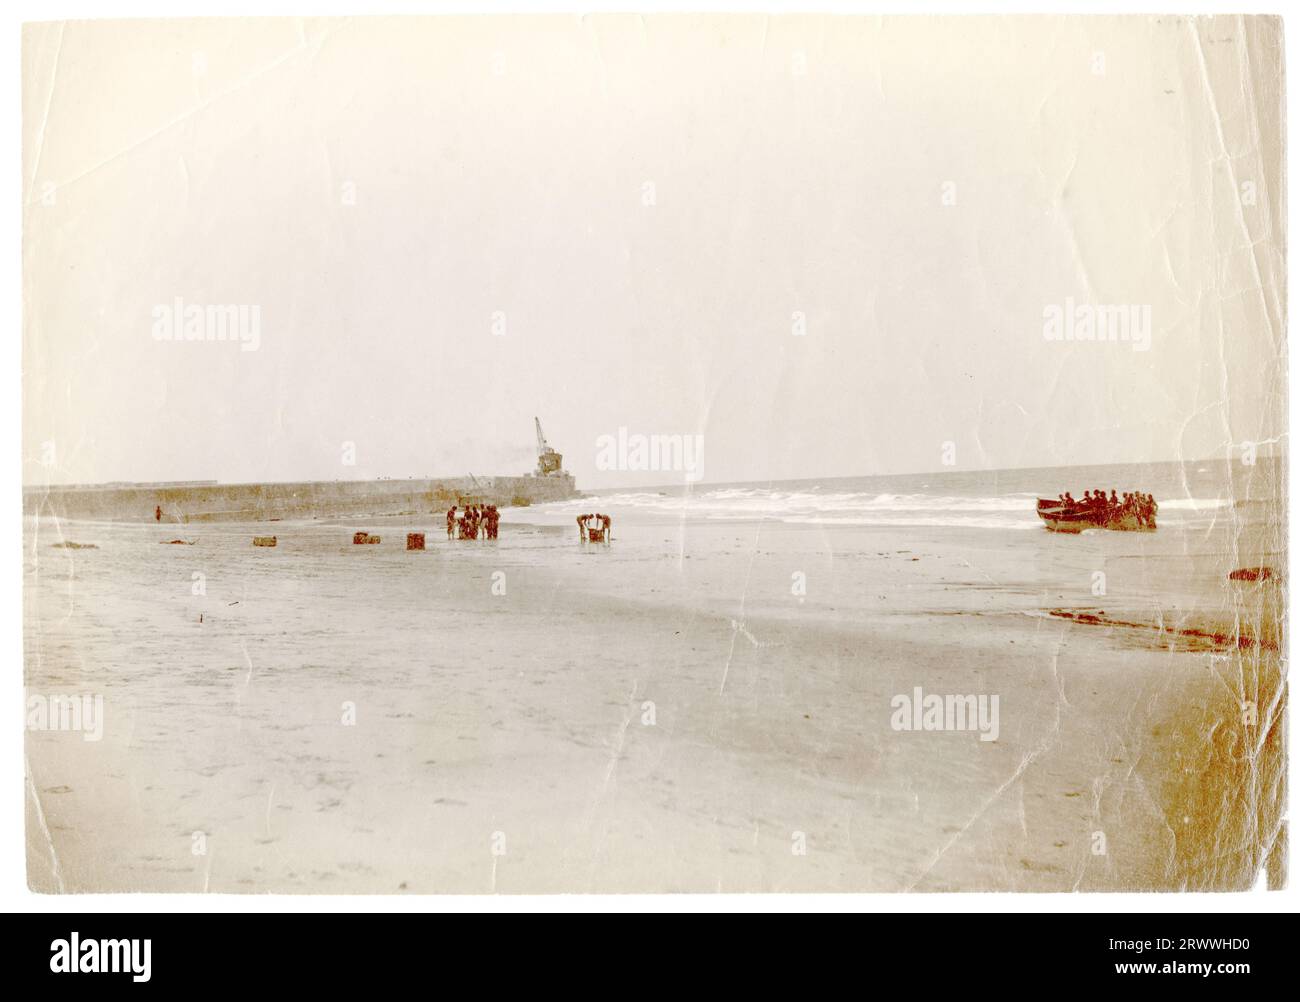 Vue de la plage de Jamestown, Accra, montrant le brise-lames avec une grande grue sur la jetée. Il y a plusieurs travailleurs africains qui traînent des marchandises sur la plage et un bateau à rames en bois est poussé sur la plage par un groupe d'hommes. Légende du manuscrit original : montrer le brise-lames à marée basse. Jamestown Accra. Banque D'Images